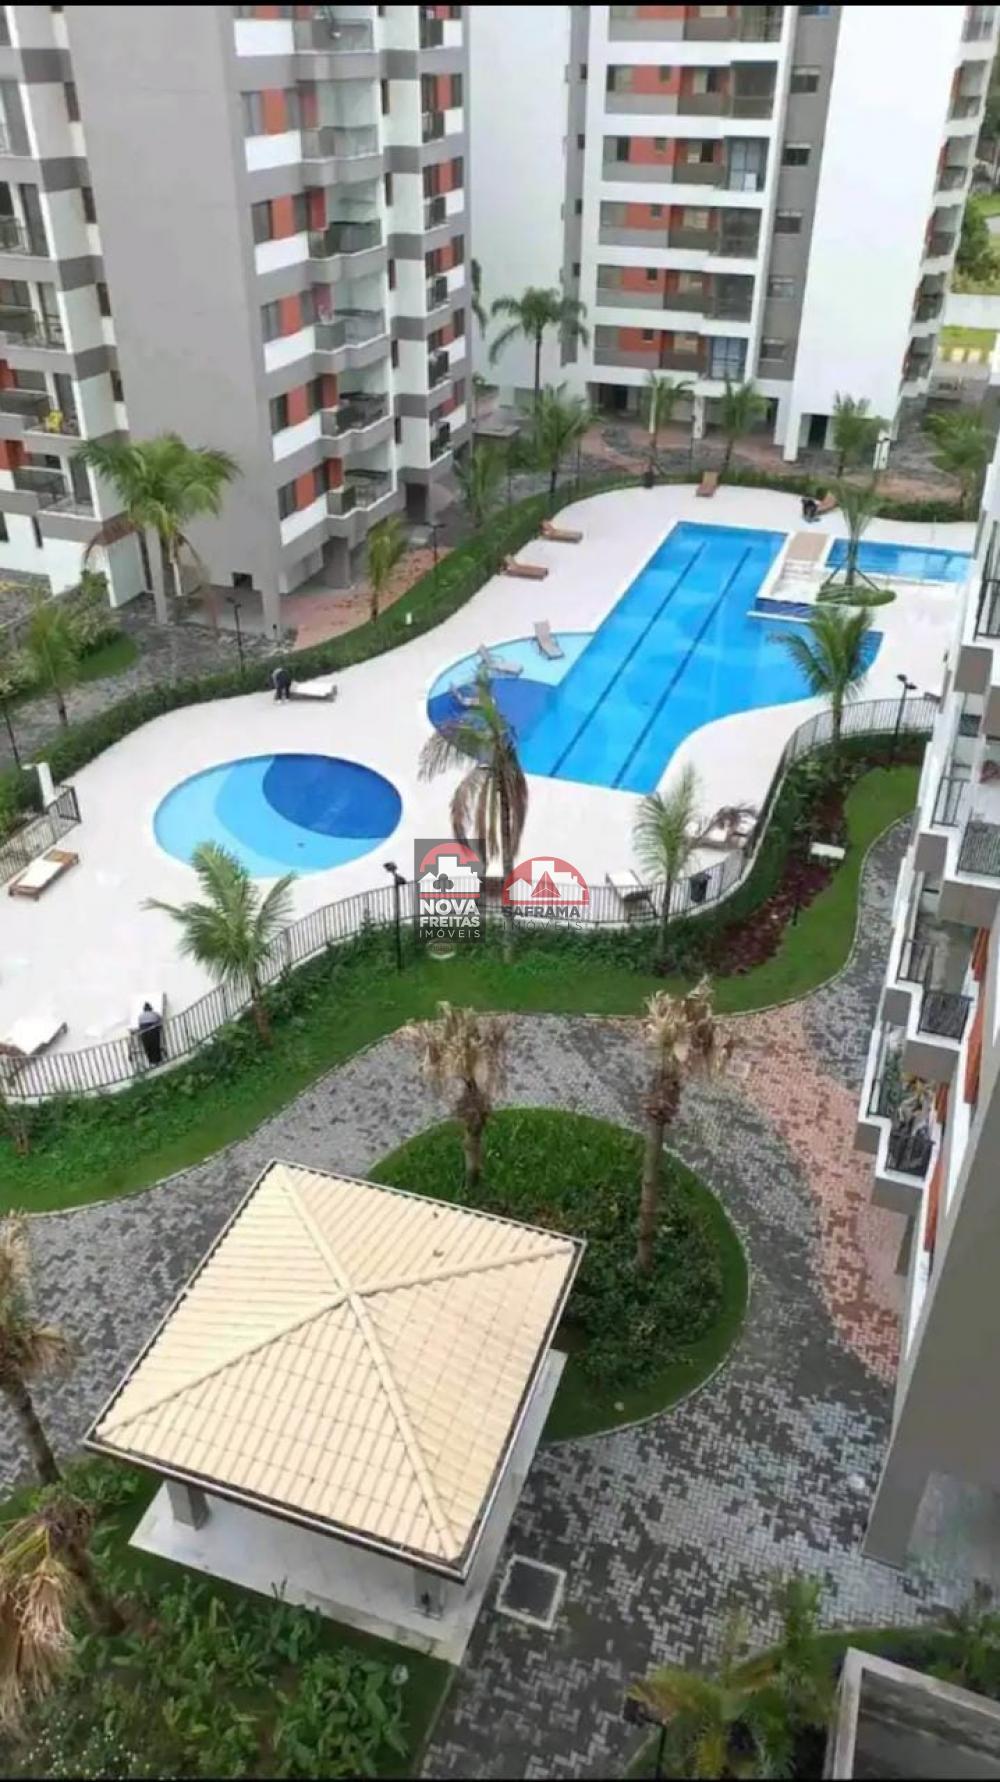 Apartamento NOVO à venda, MARTIM PRAIA CLUB, ÚLTIMAS UNIDADES - na mais  conhecida praia Martim de Sá, Caraguatatuba, SP - Israel Imoveis